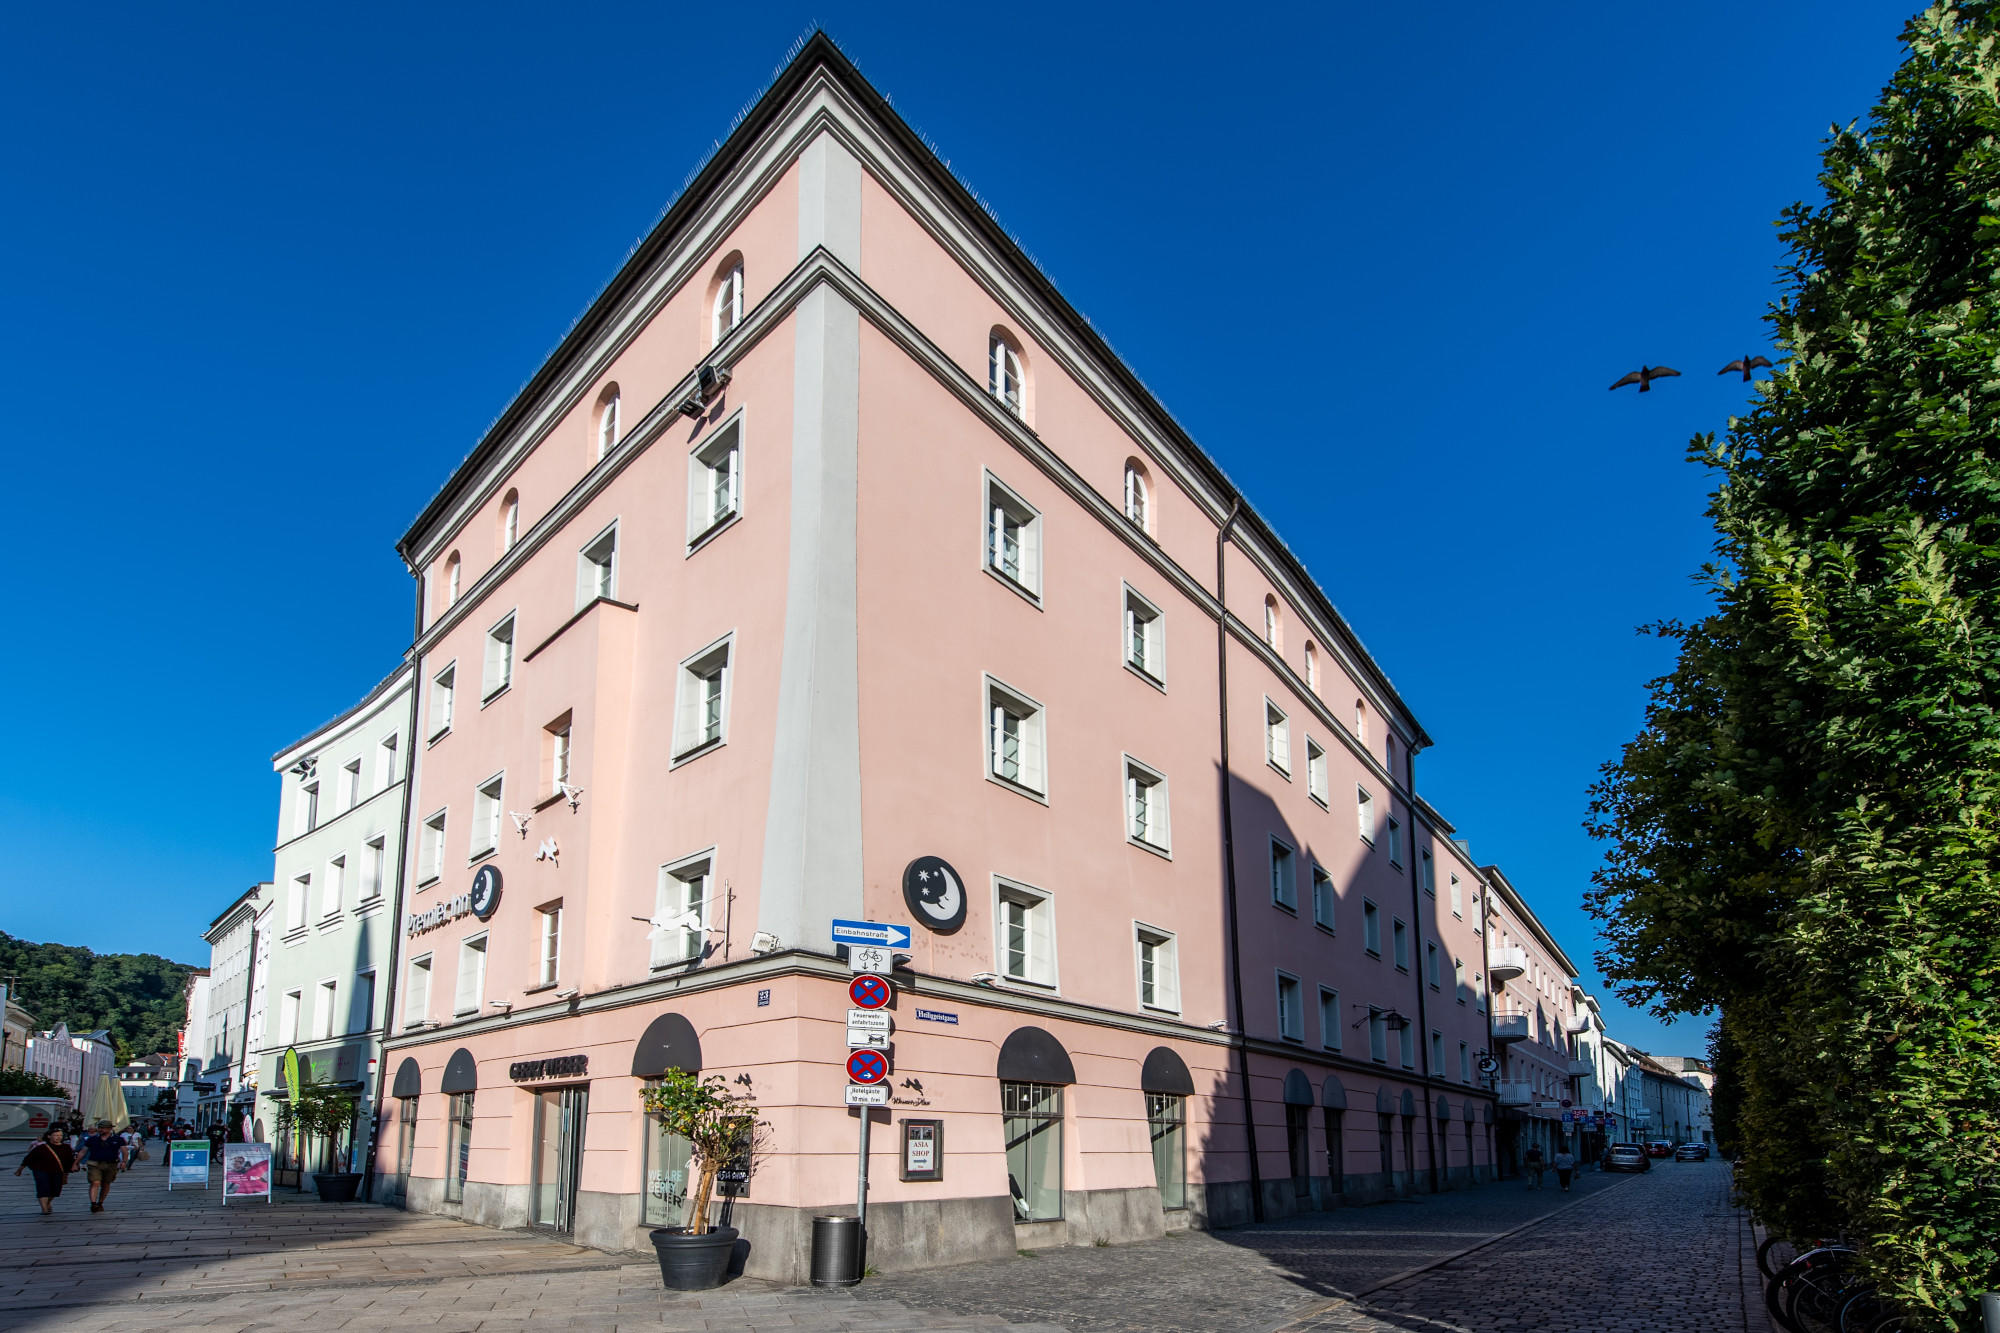 Bilder Premier Inn Passau Weisser Hase hotel